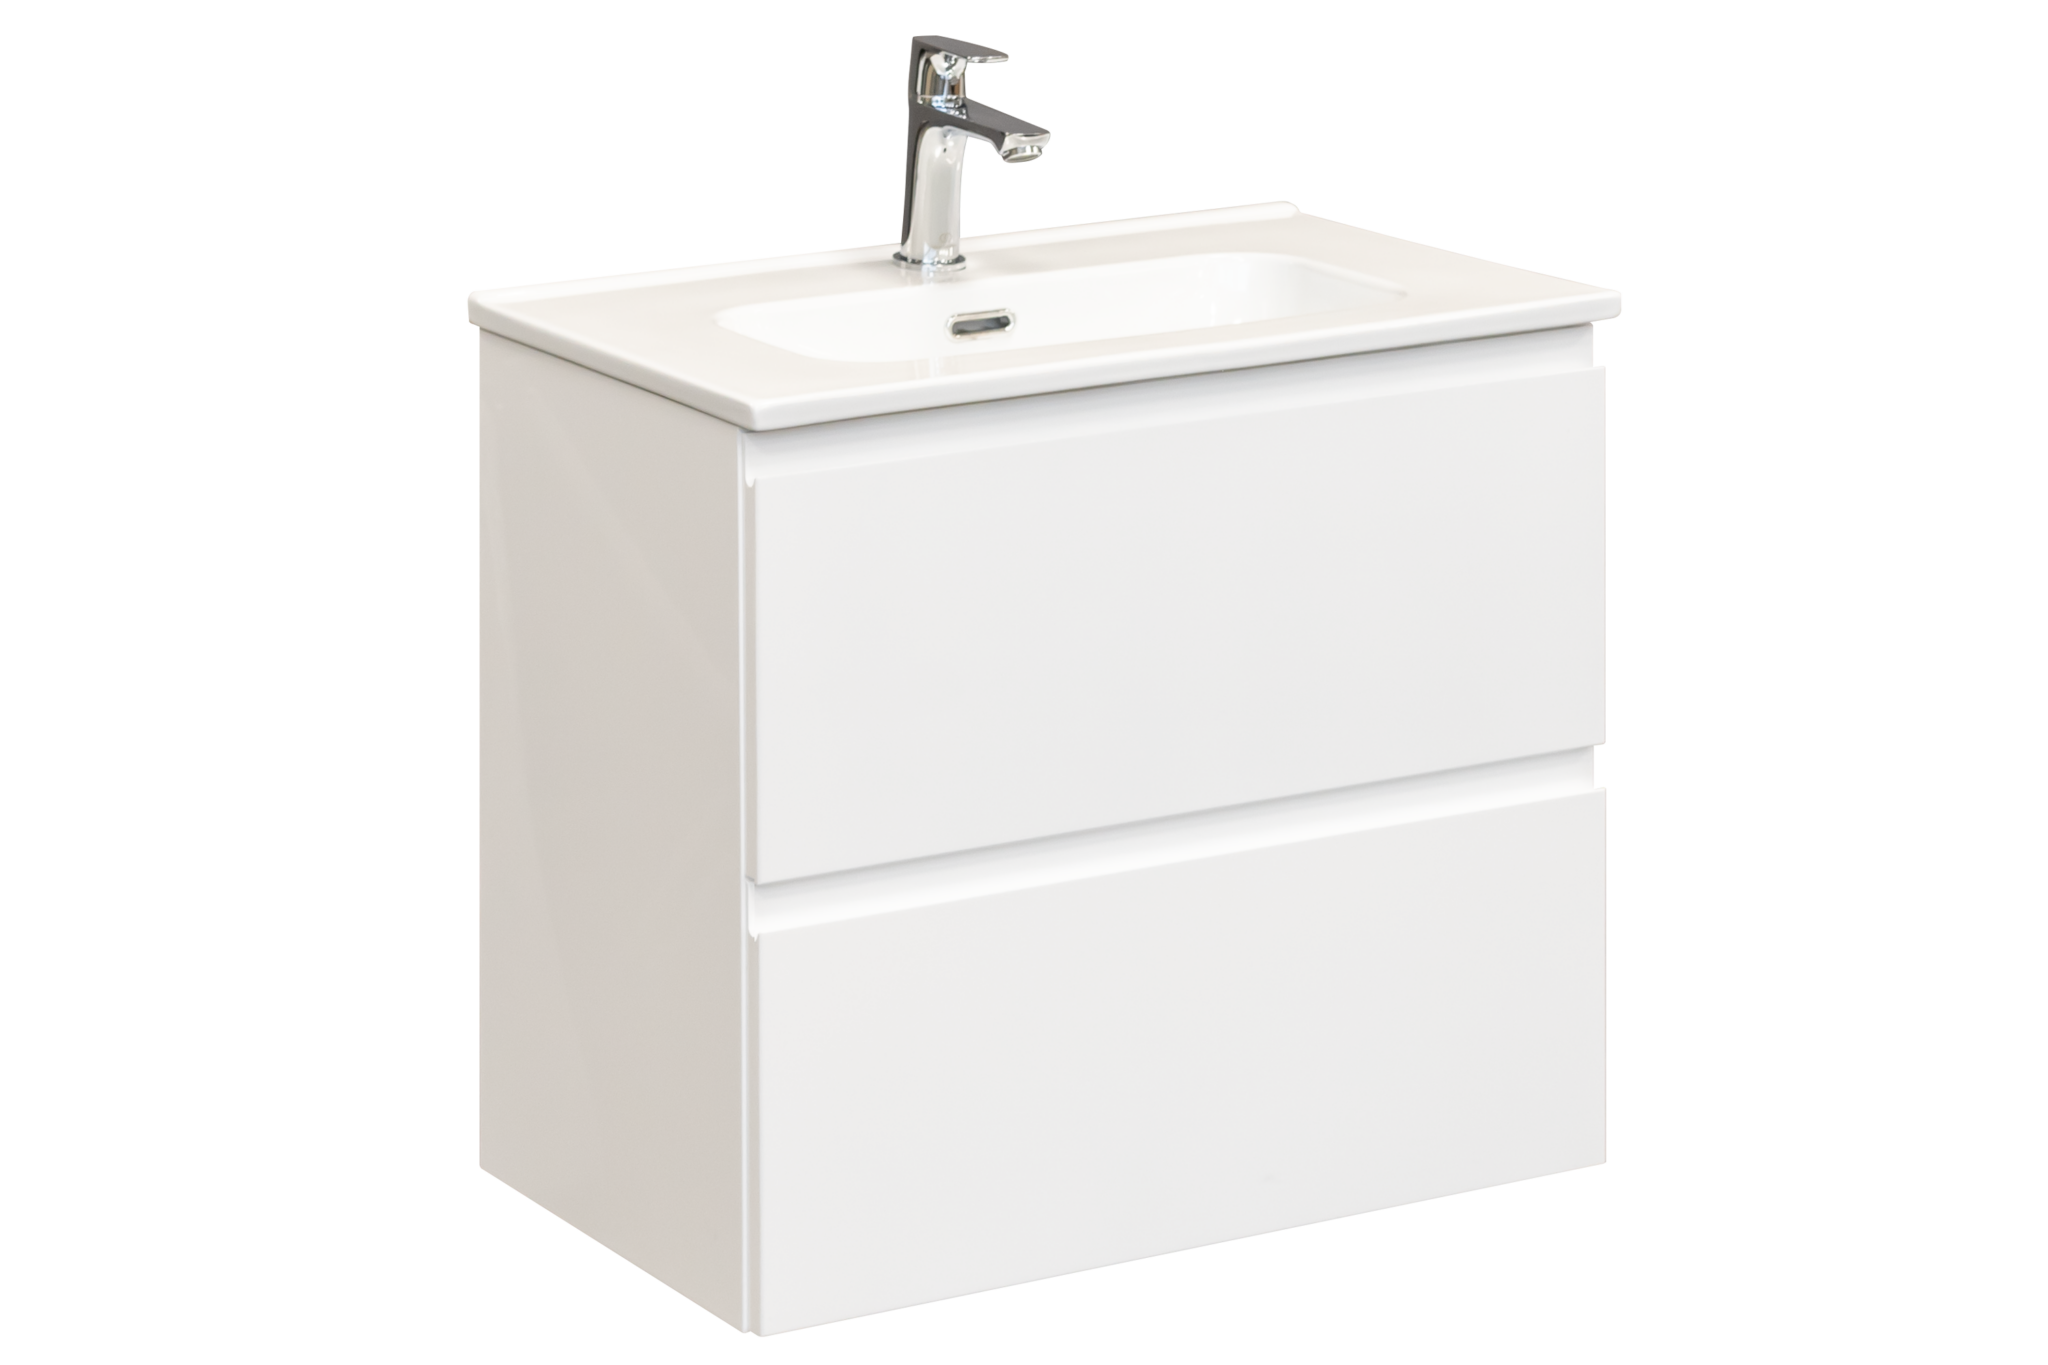 Charo 60 Shiny White cabinet + Charo 60 washbasin - Uptrend